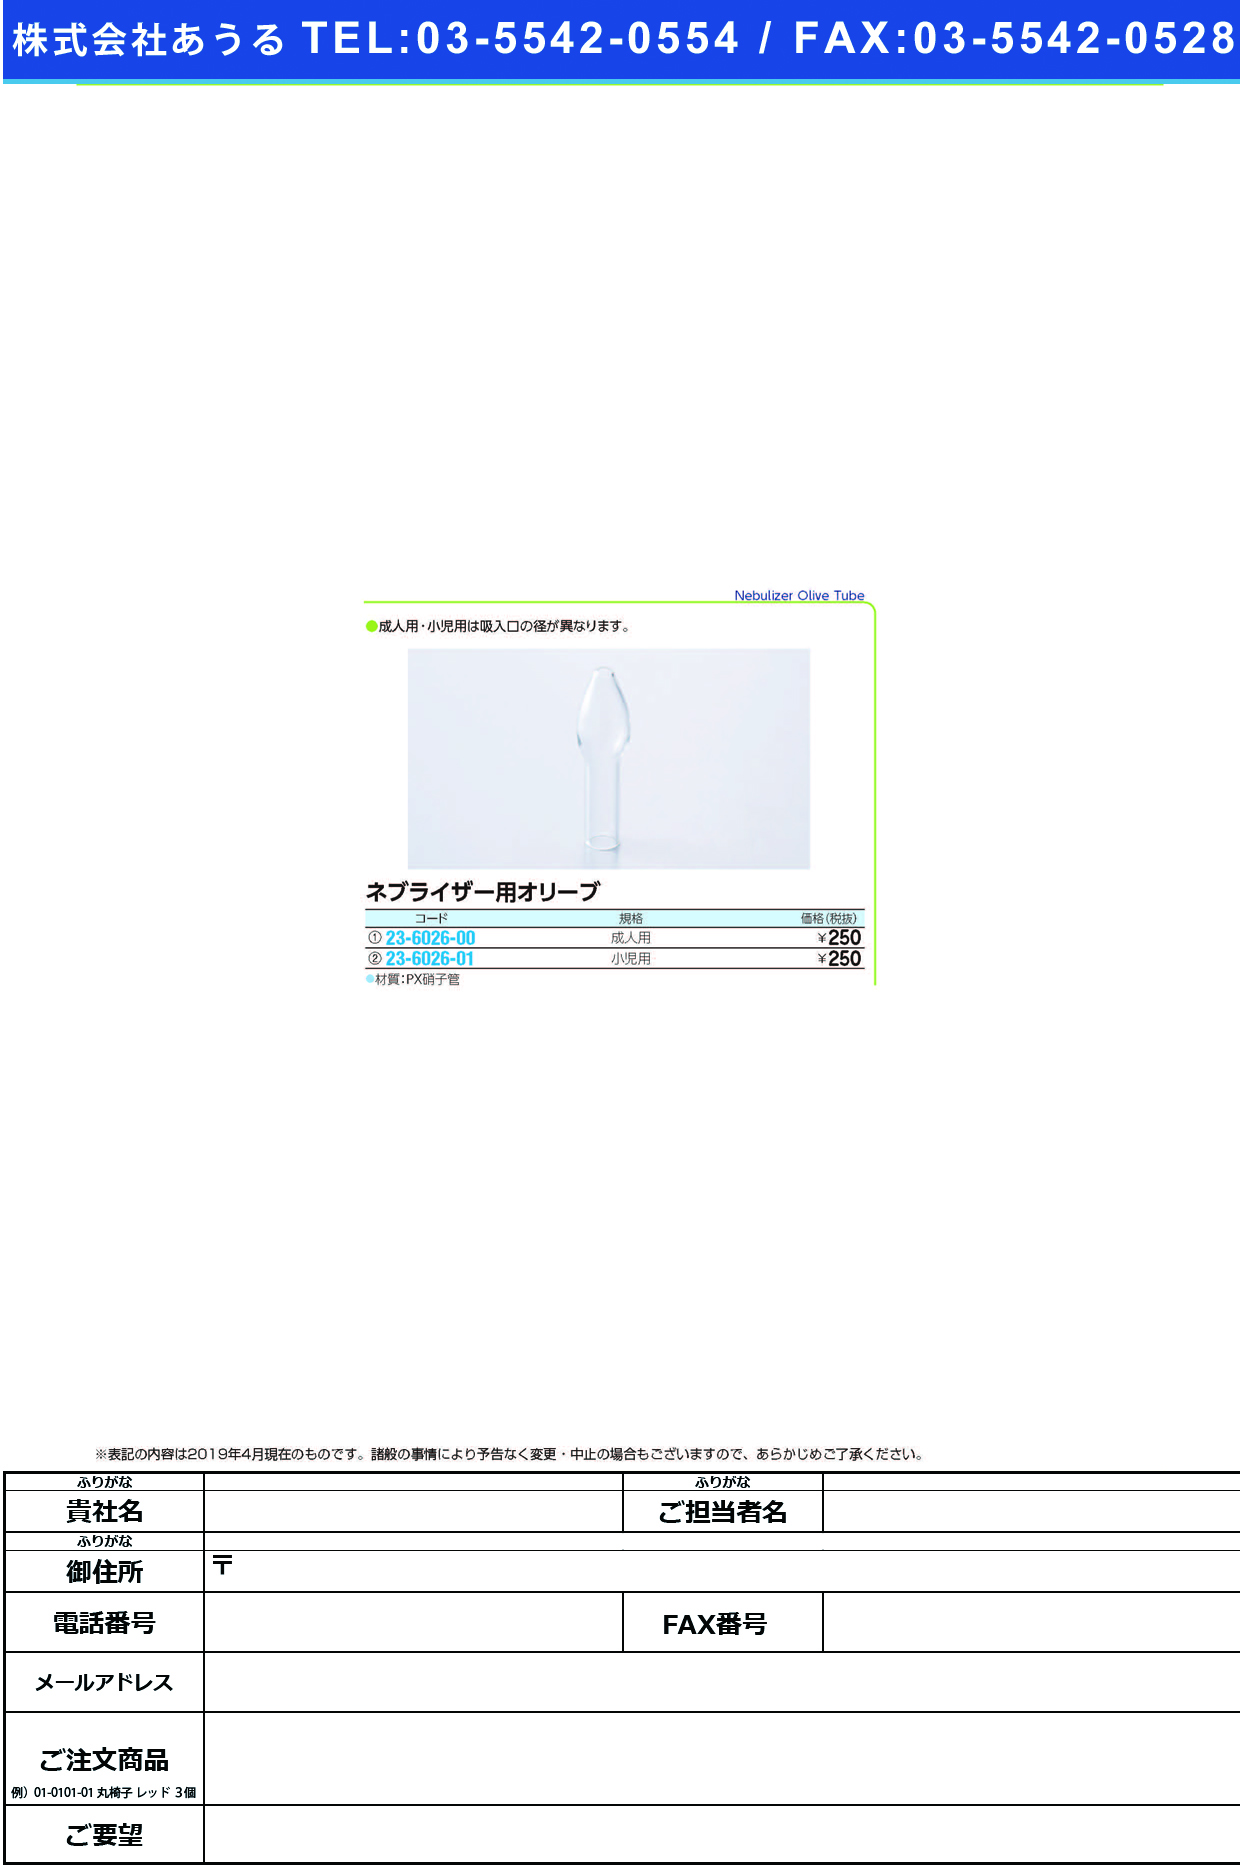 (23-6026-00)ネブライザー用オリーブ（成人用）  ﾈﾌﾞﾗｲｻﾞｰﾖｳｵﾘｰﾌﾞｾｲｼﾞﾝ【1個単位】【2019年カタログ商品】